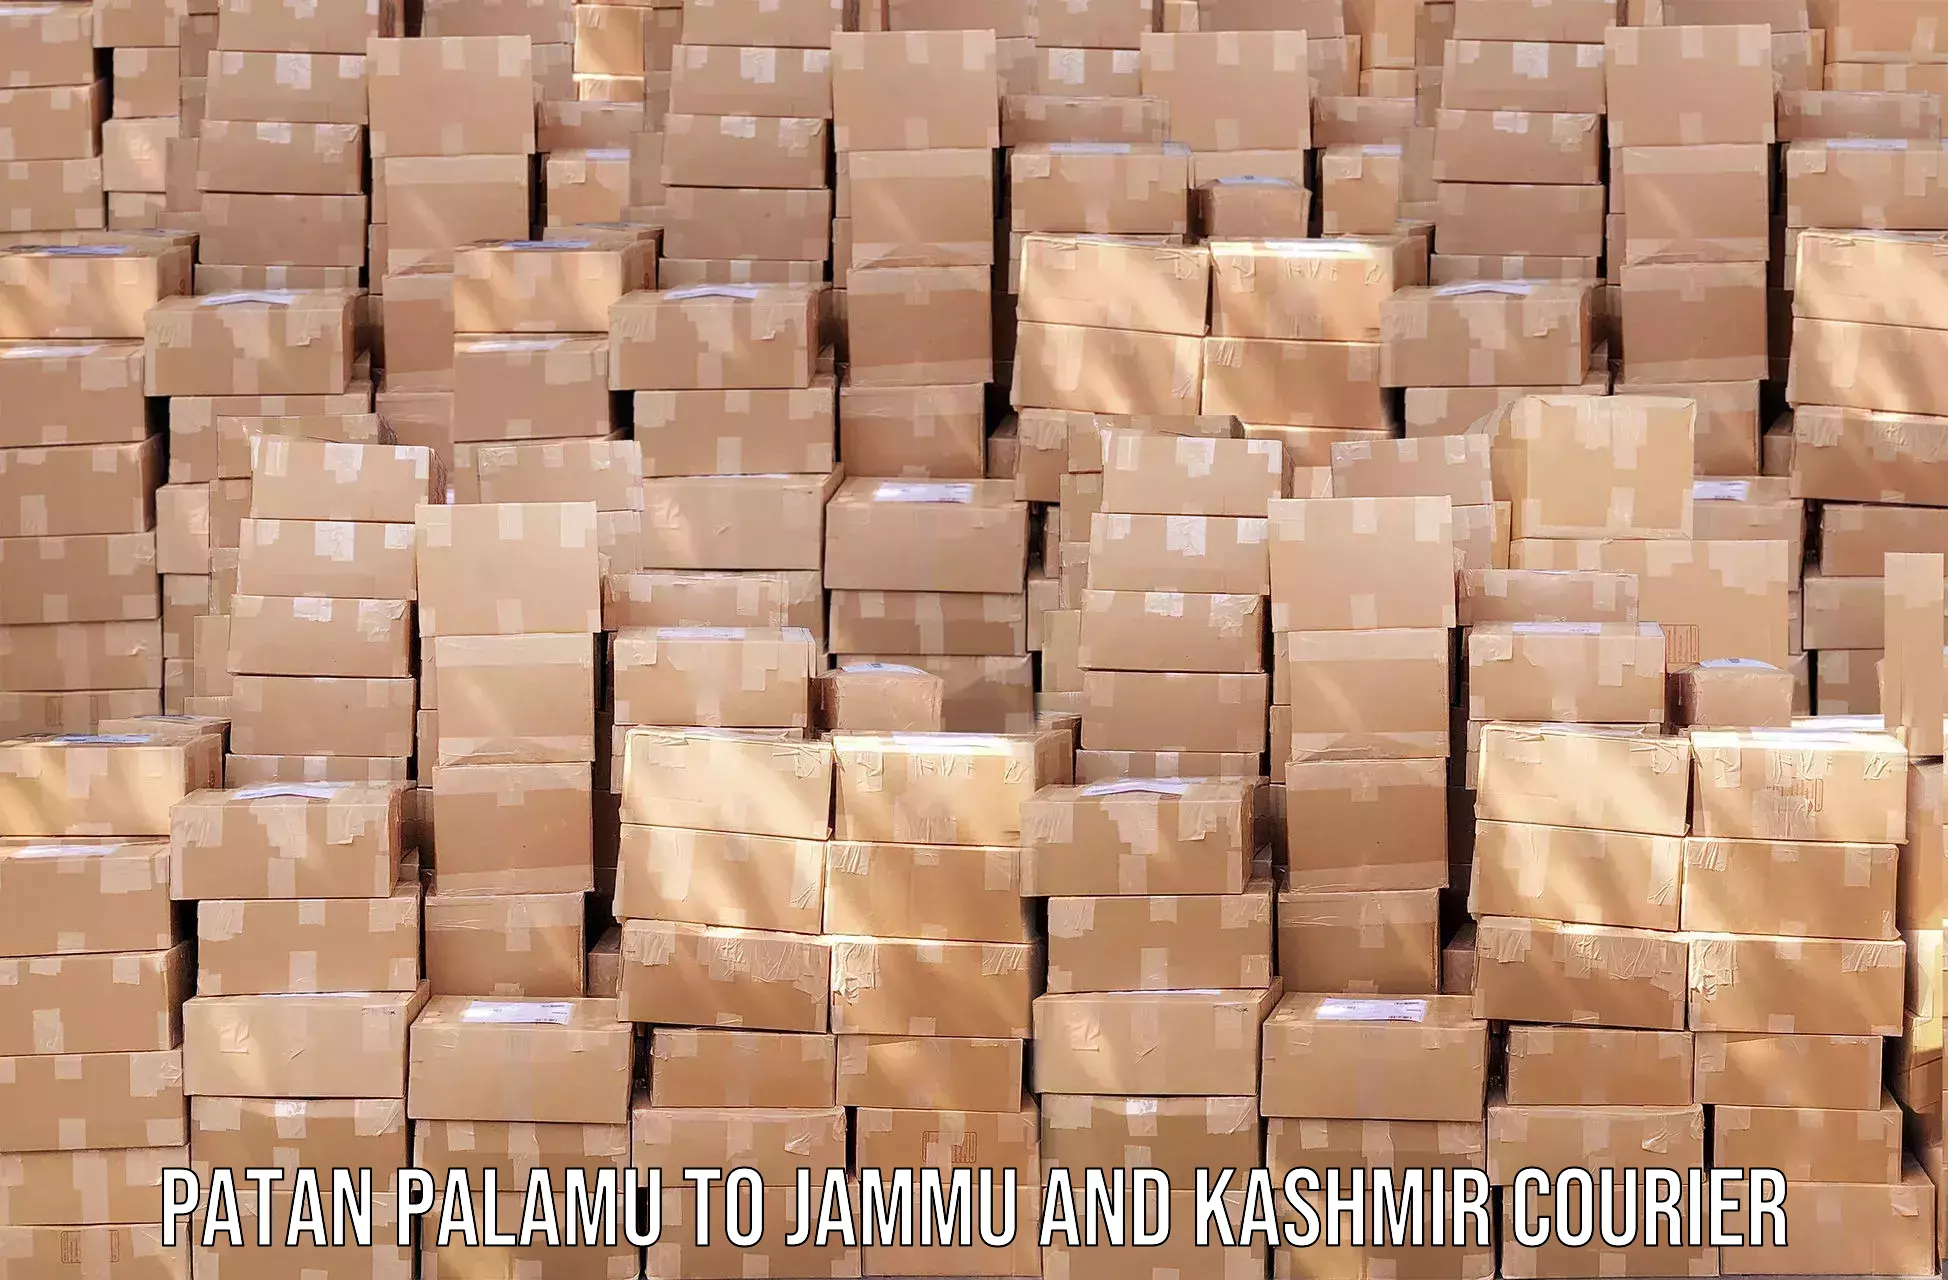 Express logistics service Patan Palamu to Jammu and Kashmir